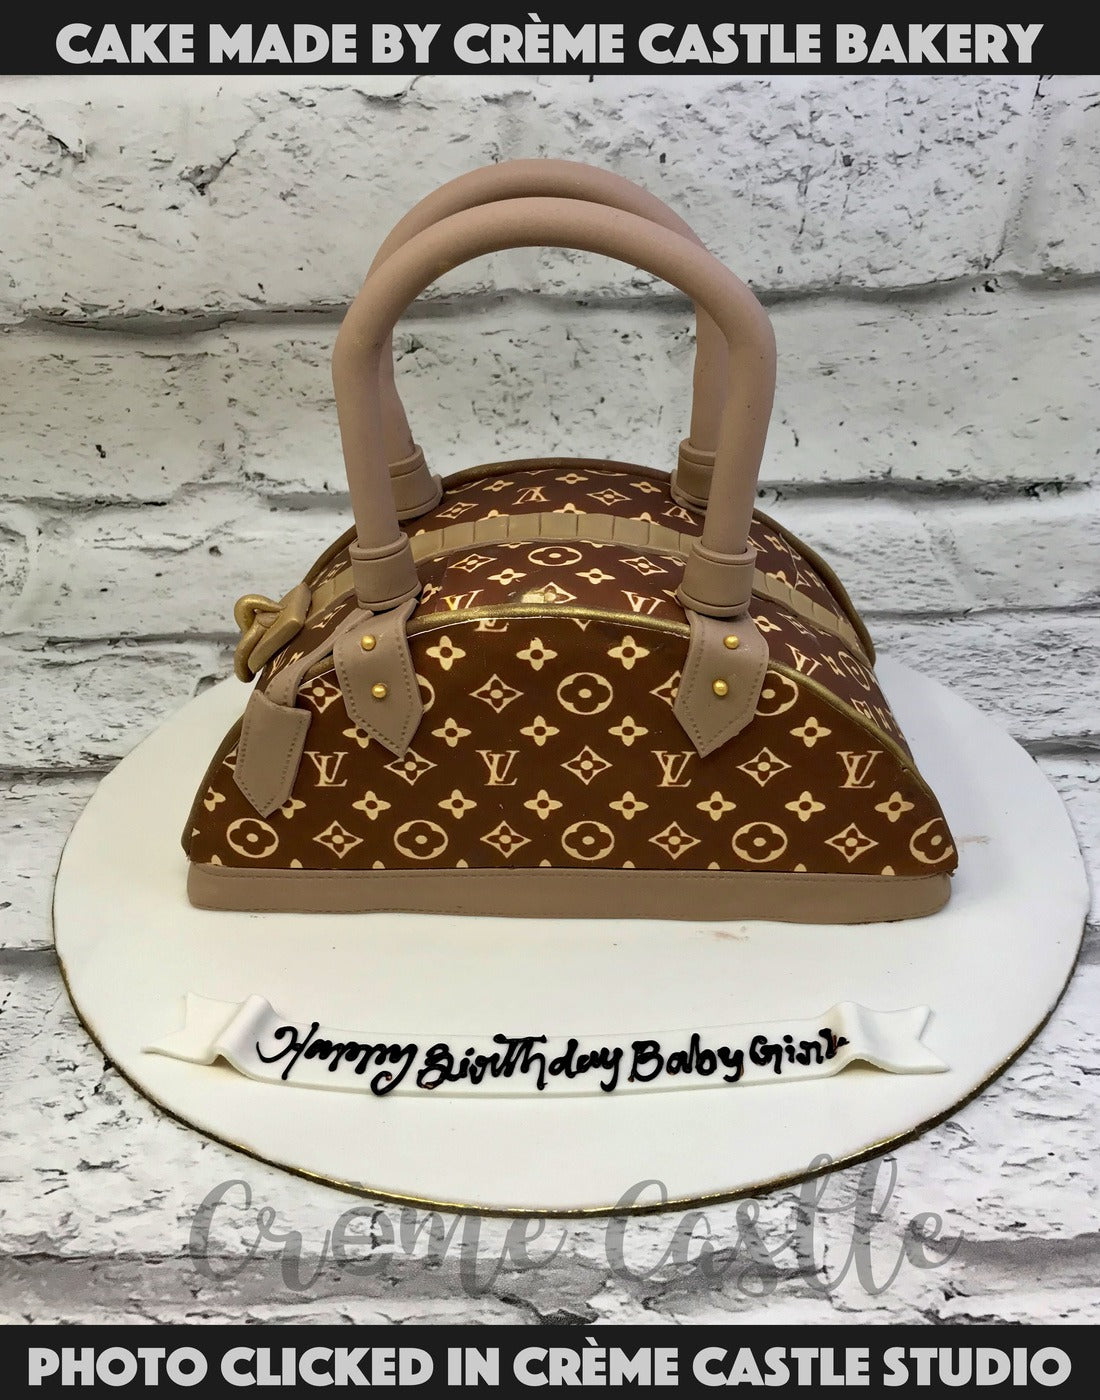 Louis Vuitton bag cake CS0300  Circos Pastry Shop